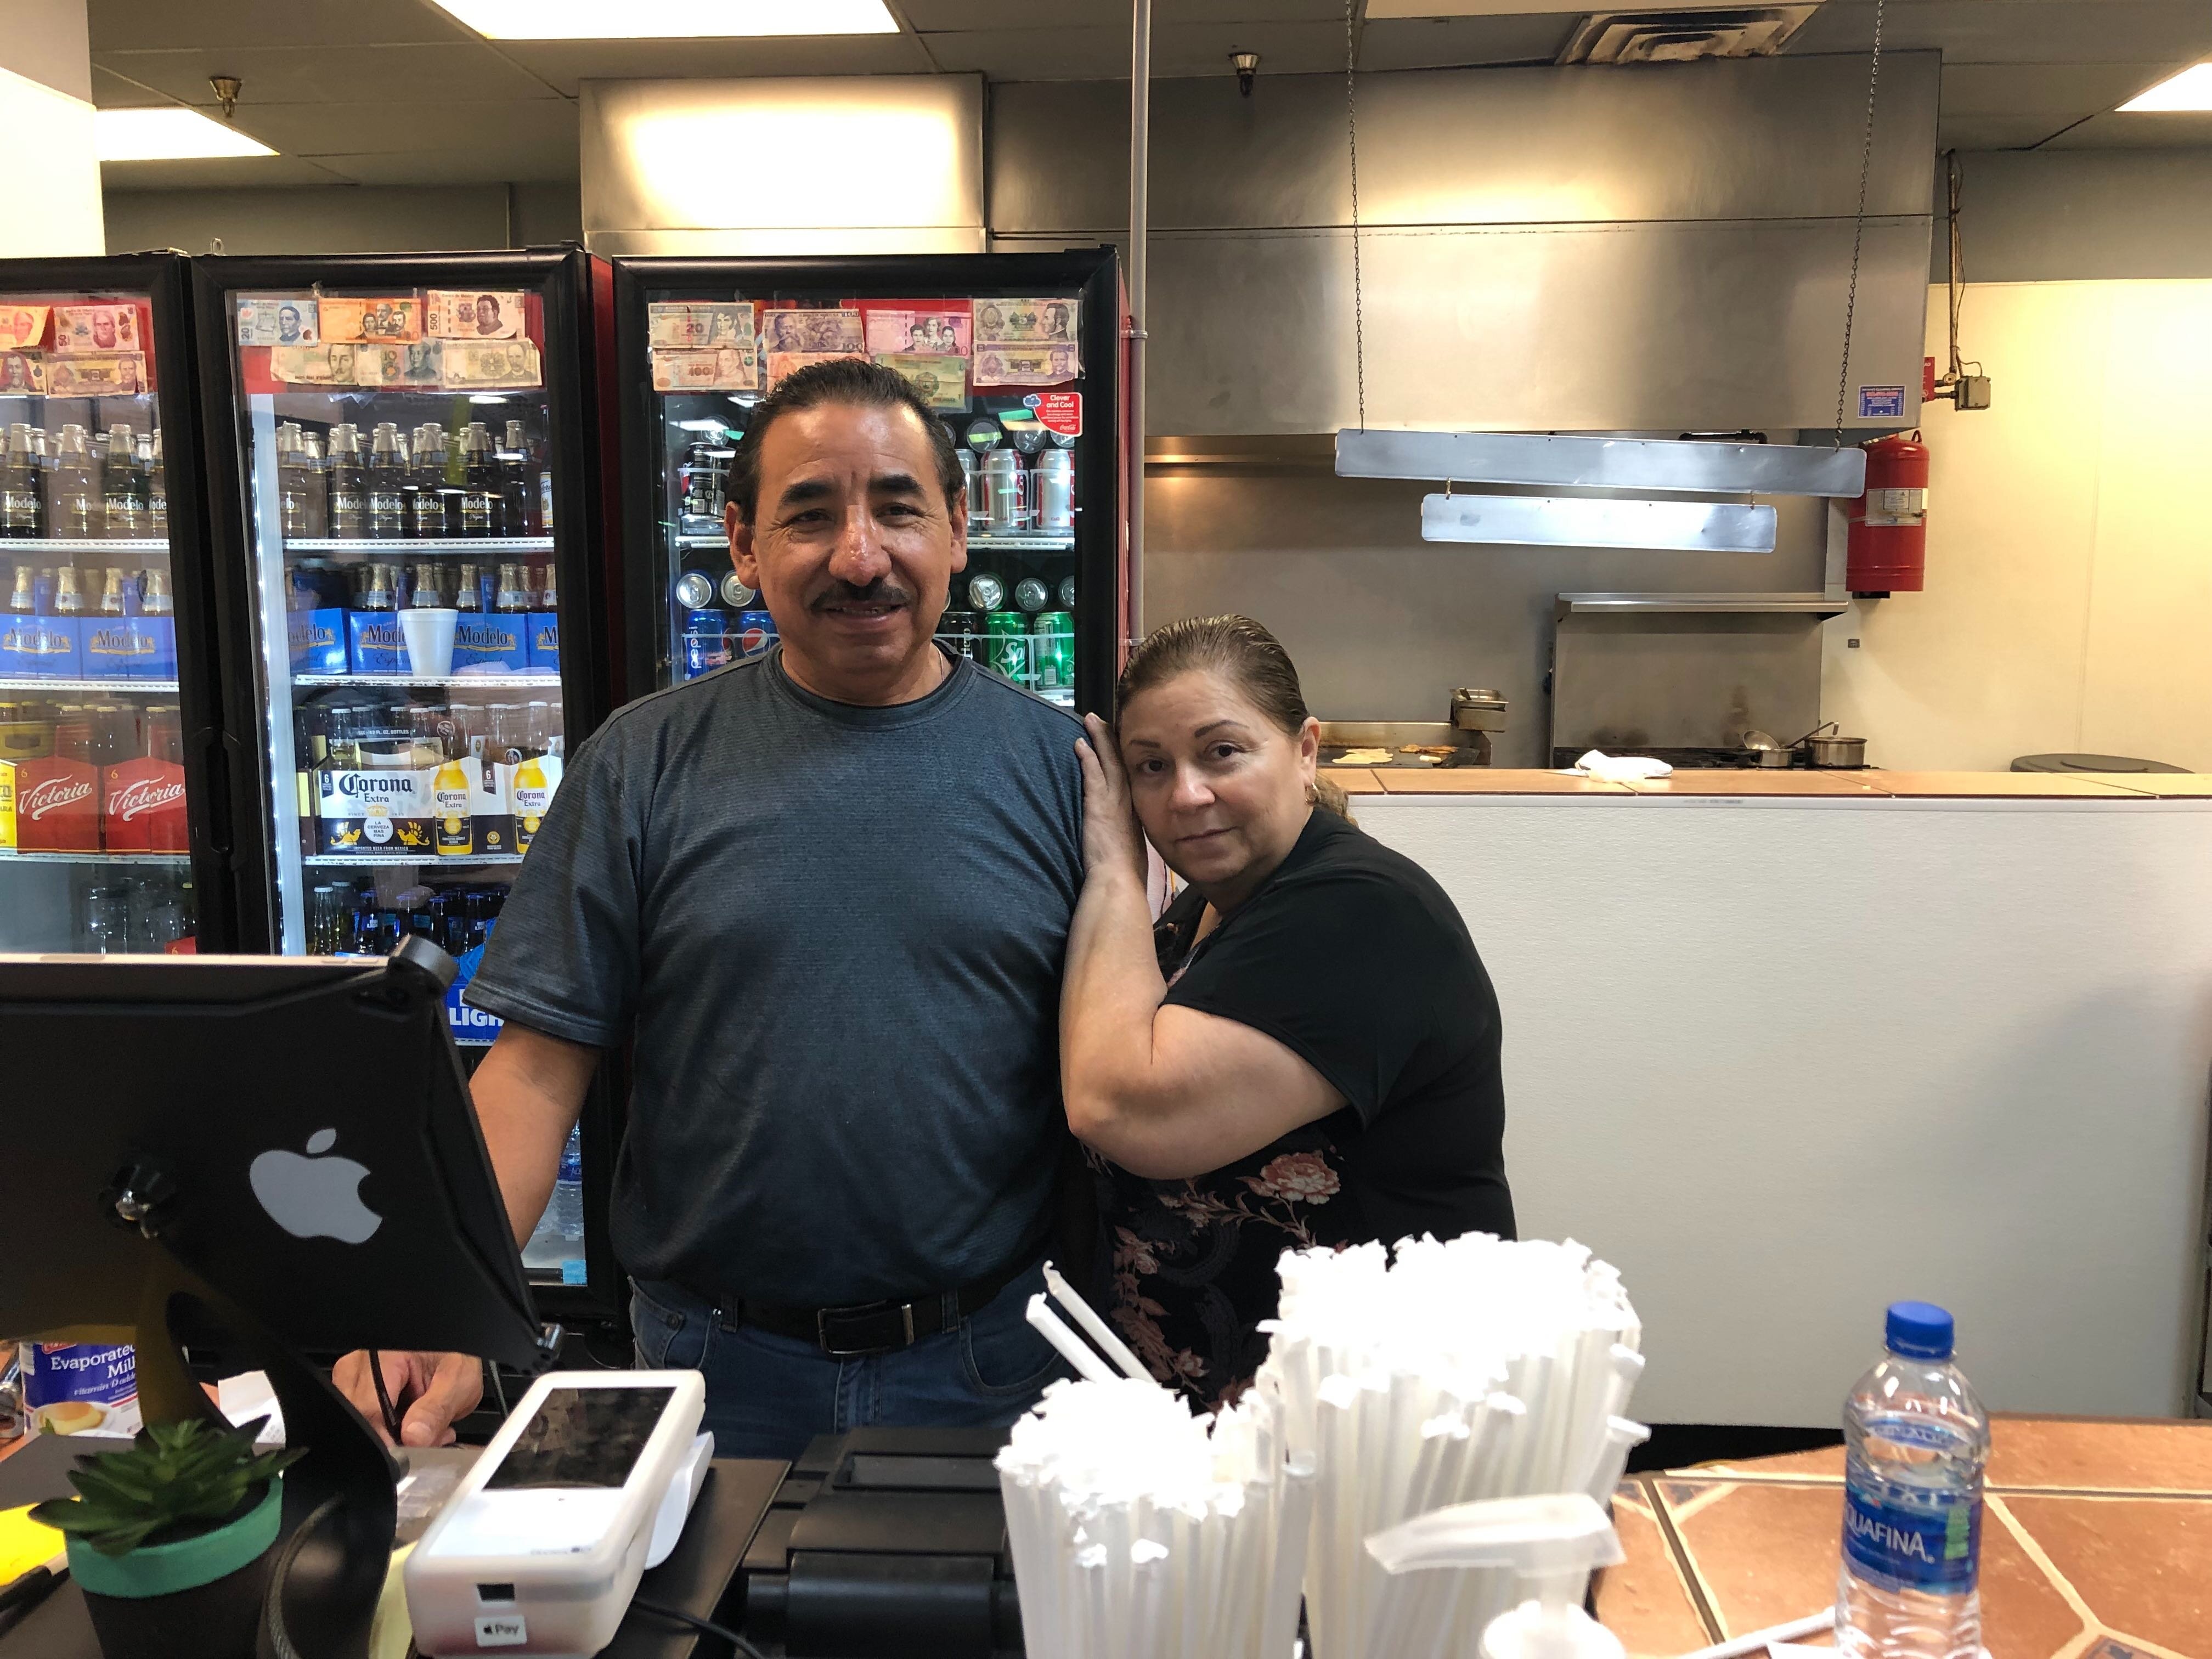 Juan Antonio Hernandez, owner of El Nuevo Mercadito, poses with his wife, Norma Mendoza, at the restaurant's counter. El Nuevo Mercadito is a Mexican restaurant located inside the El Mercadito de Memphis in Hickory Hill. (A.J. Dugger)